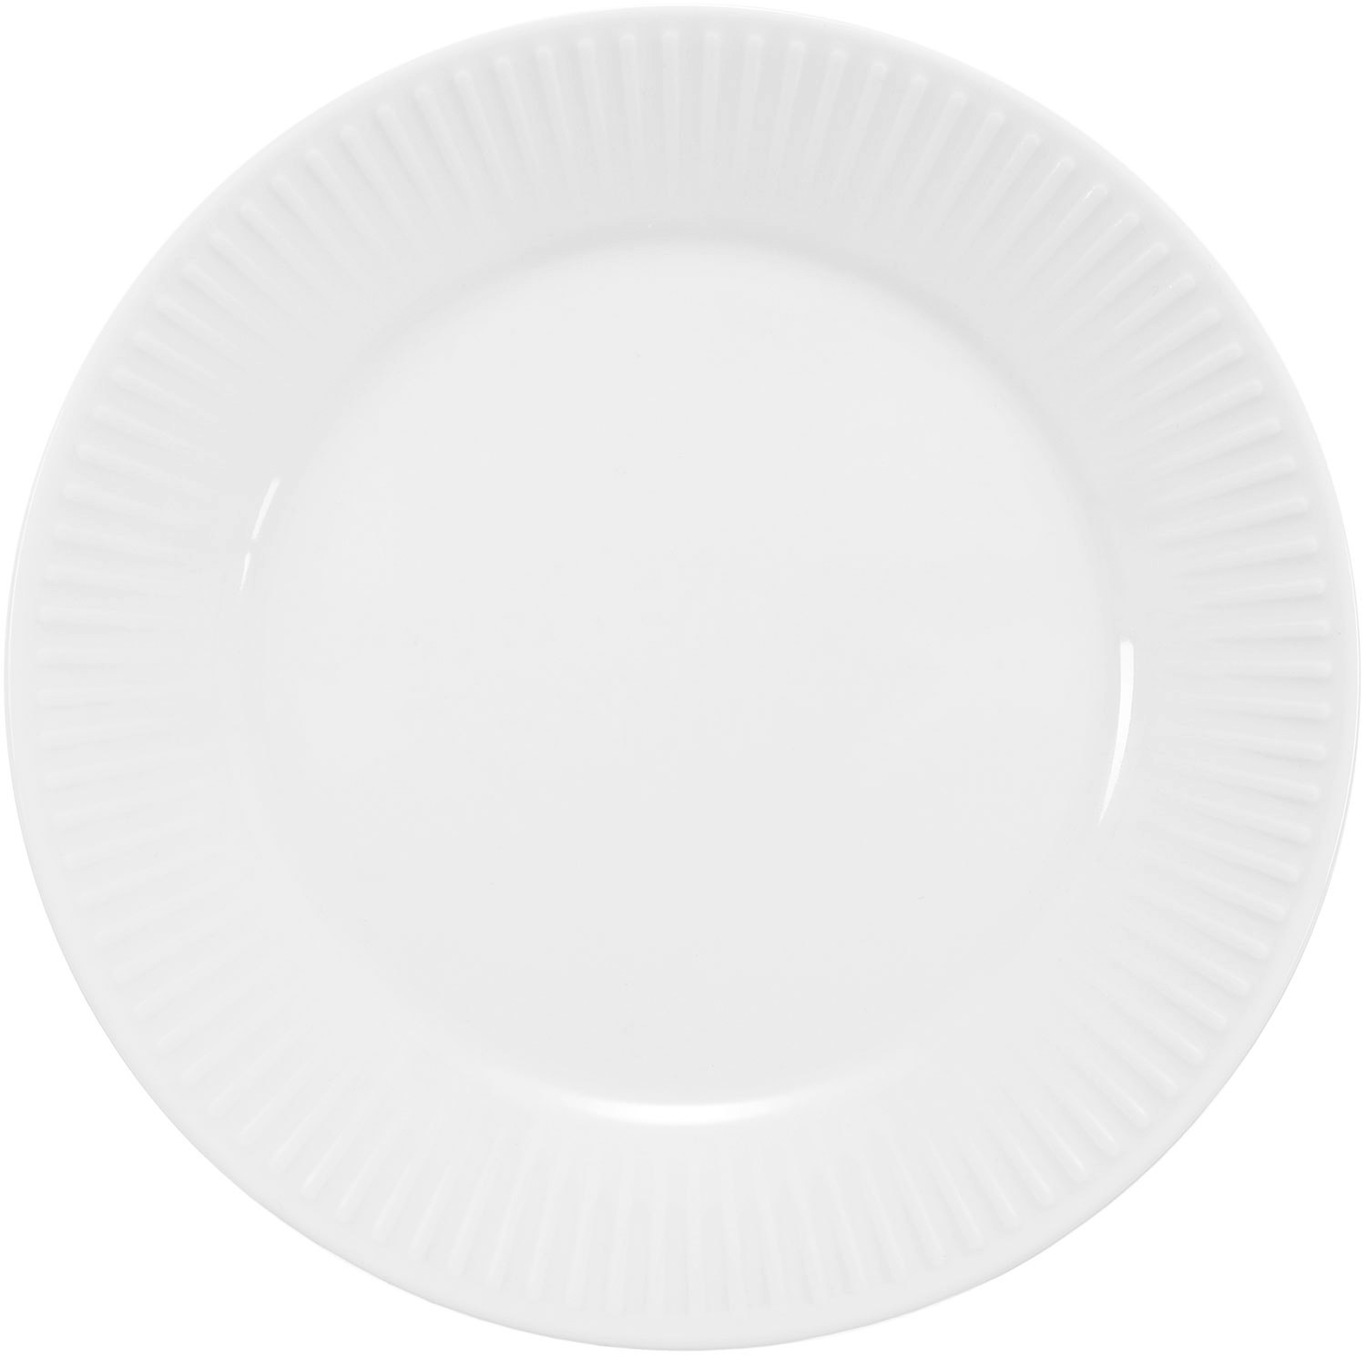 Douro Plate 18 cm, White